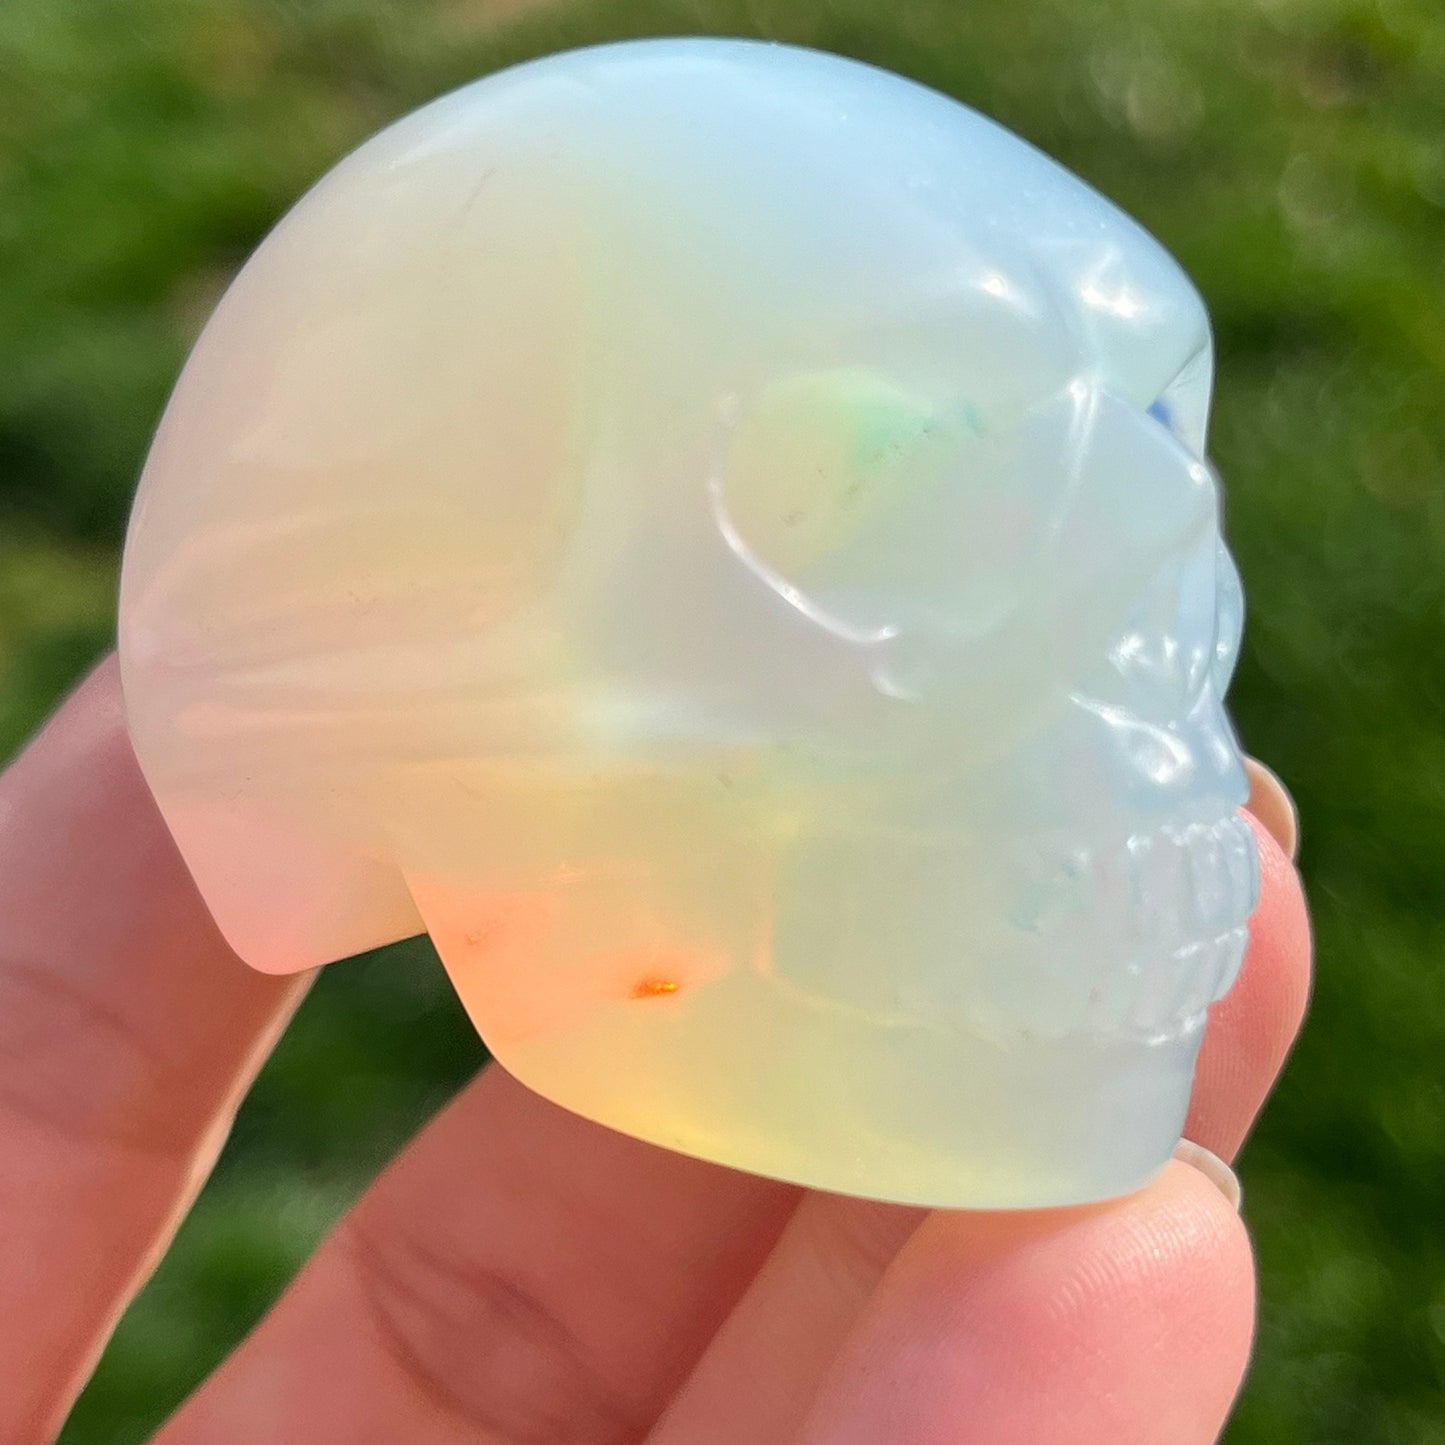 2” Crystal Mini Skull | Tigers eye skull | Opalite Skull | Moss Agate Skull | Green Aventurine Skull